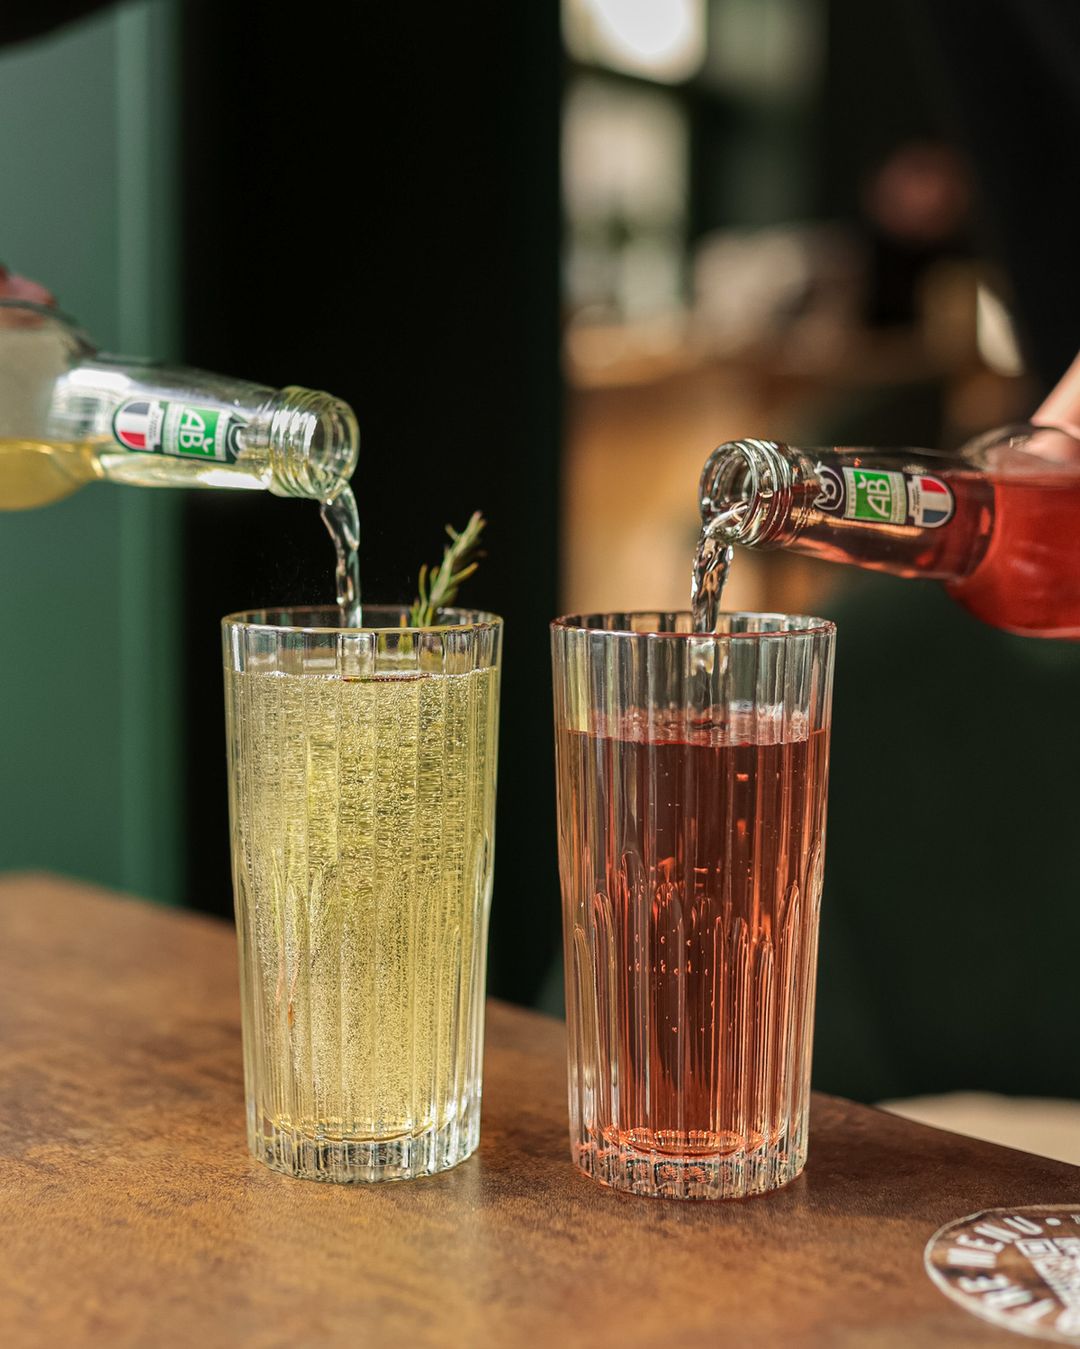 12 marques de boissons sans alcool s'engagent en faveur du recyclage